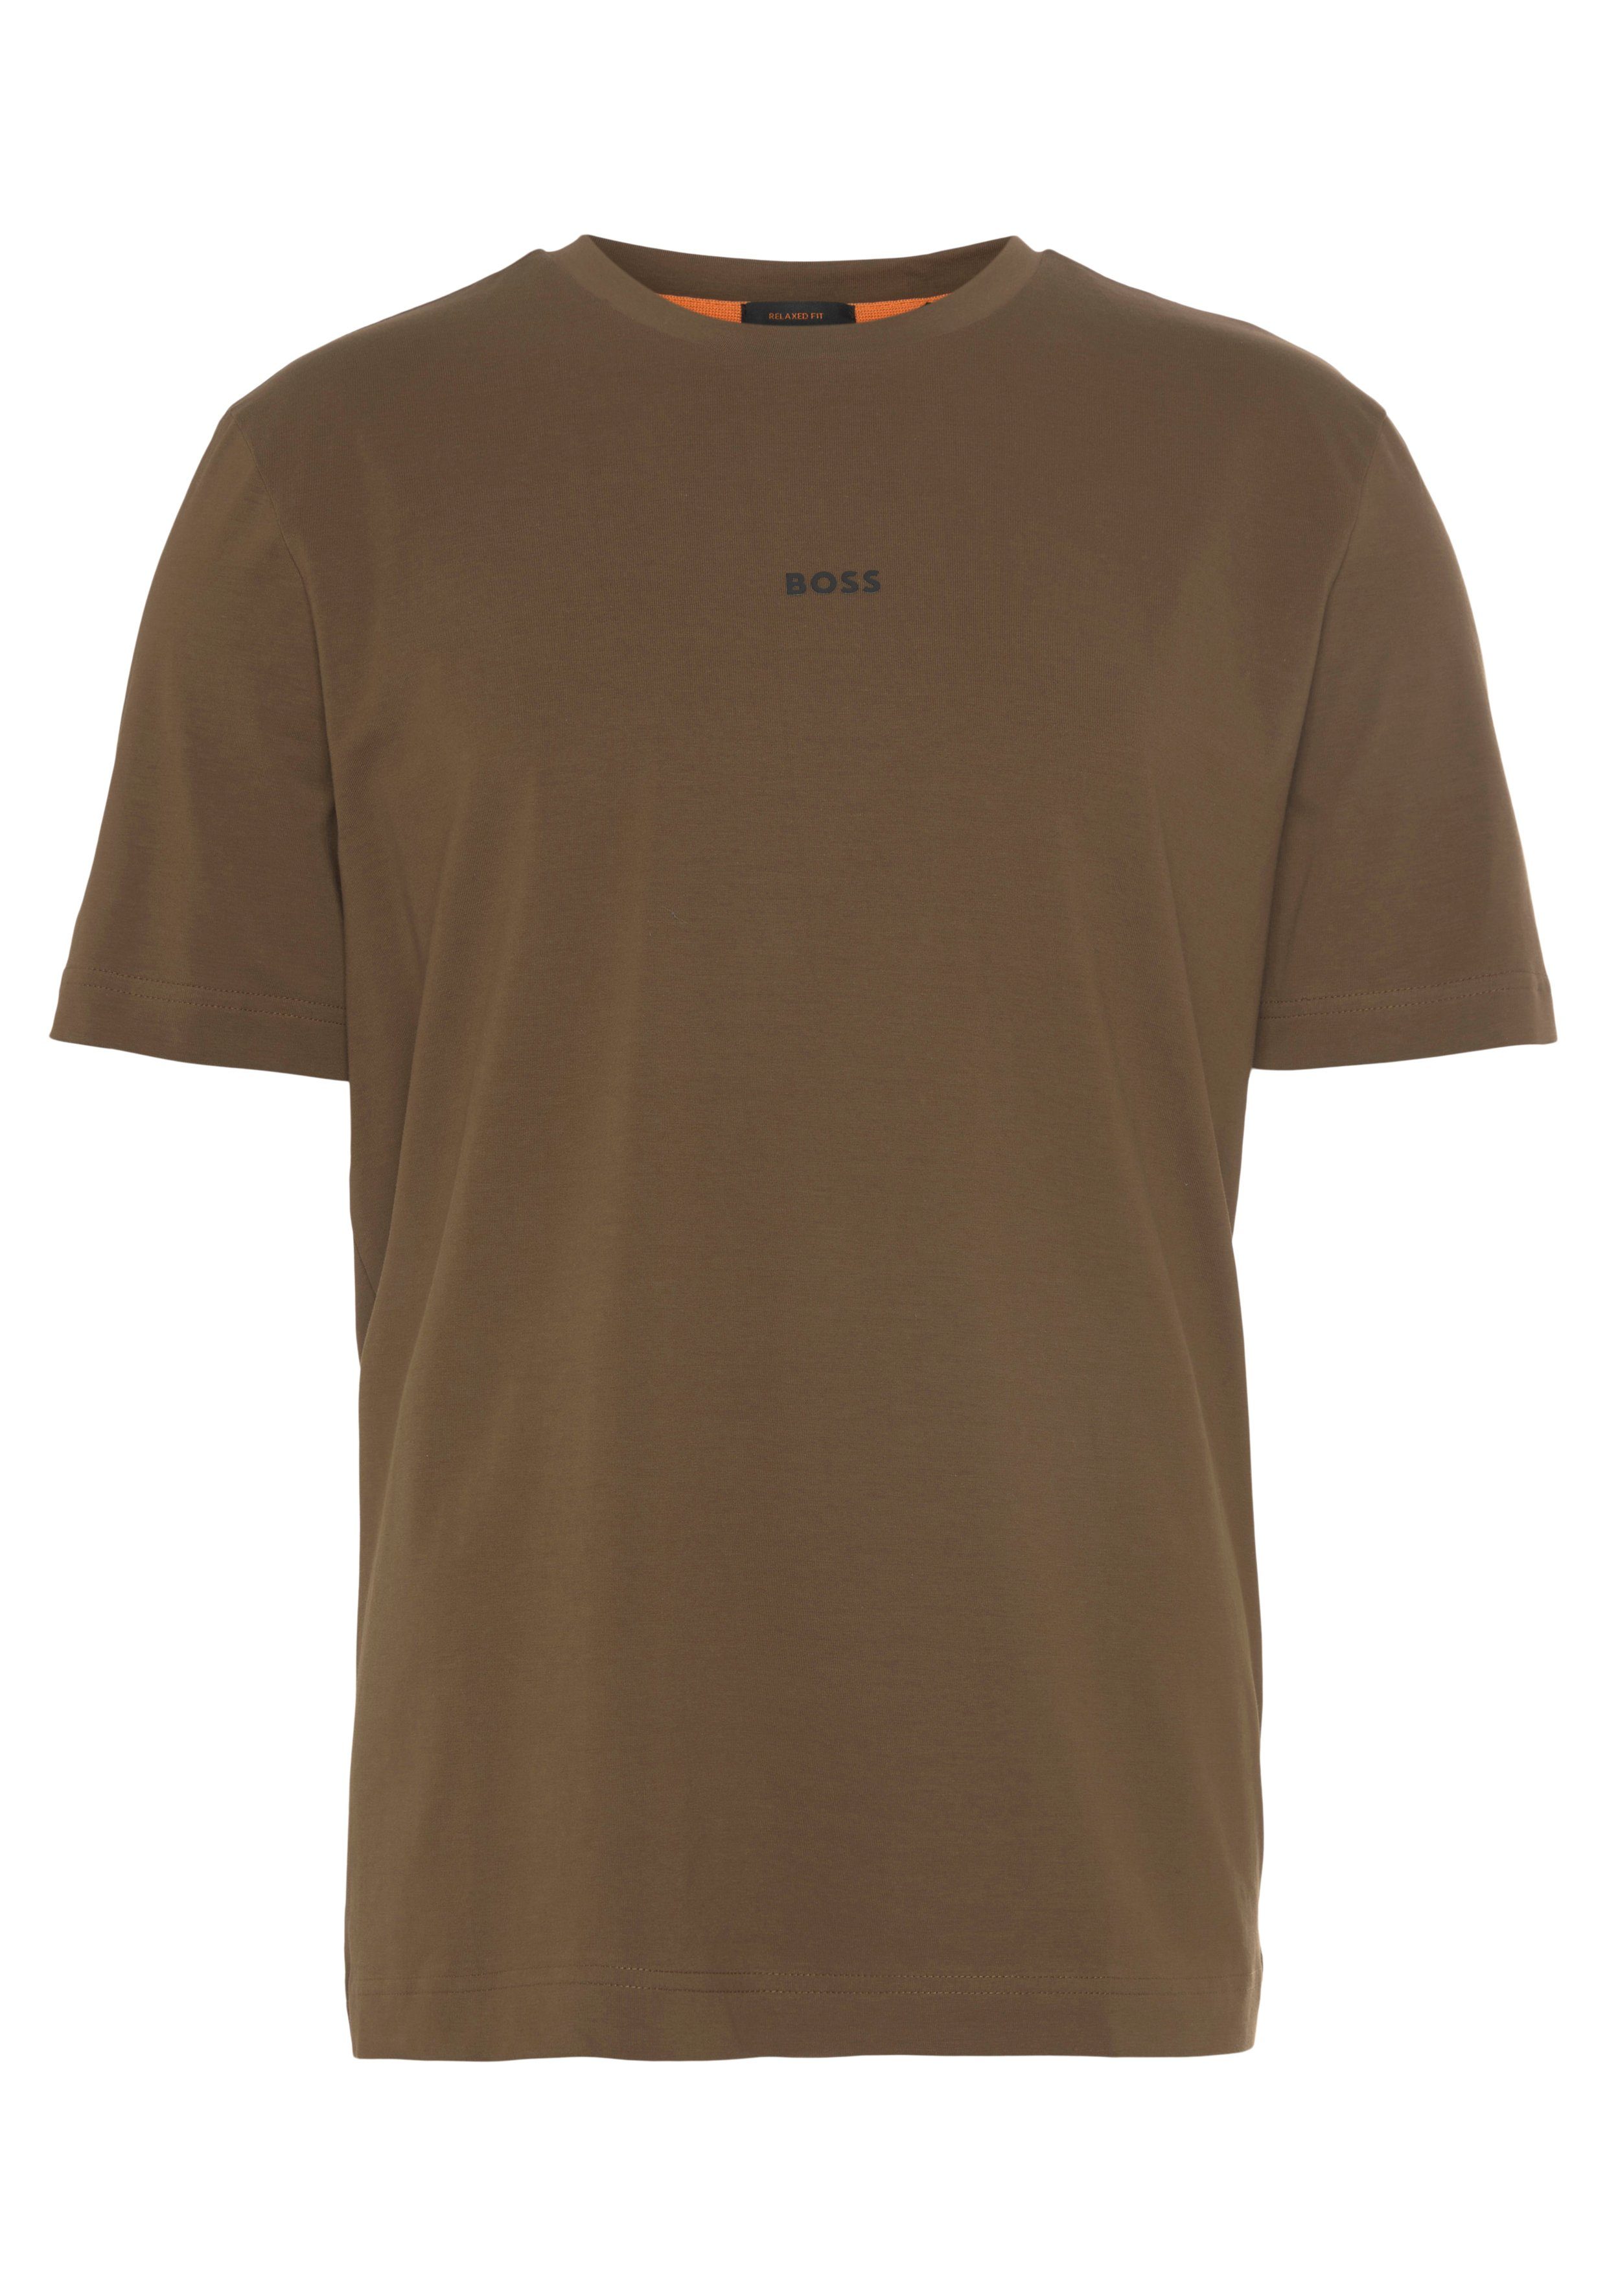 BOSS ORANGE Kurzarmshirt TChup mit BOSS-Logodruck auf der Brust, Aus einer  elastischen Baumwollmischung